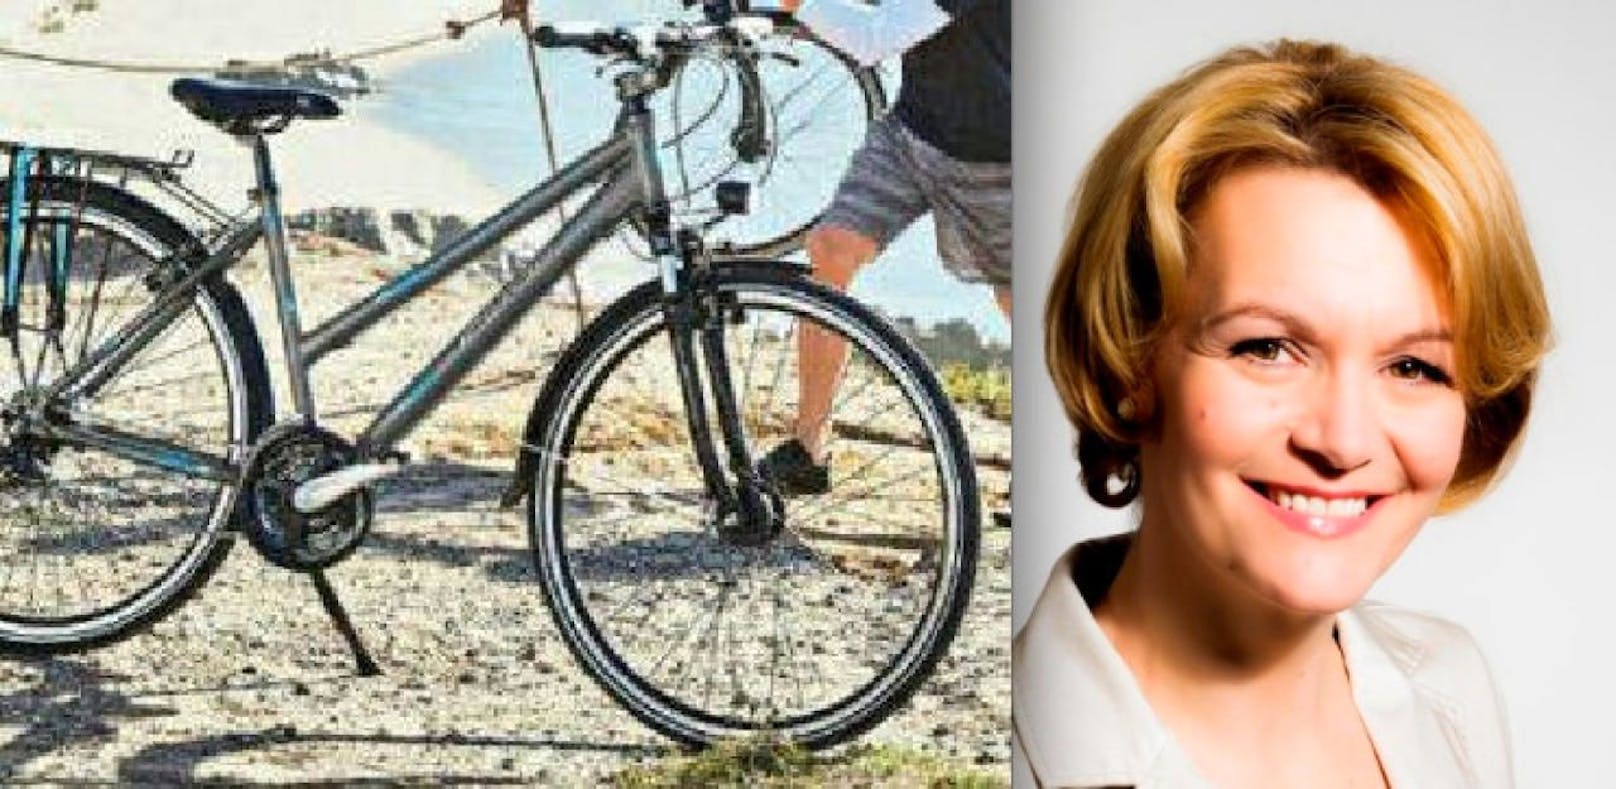 Trekking-Fahrrad von Amrita Enzinger wurde am Bahnhof in Deutsch-Wagram gestohlen.